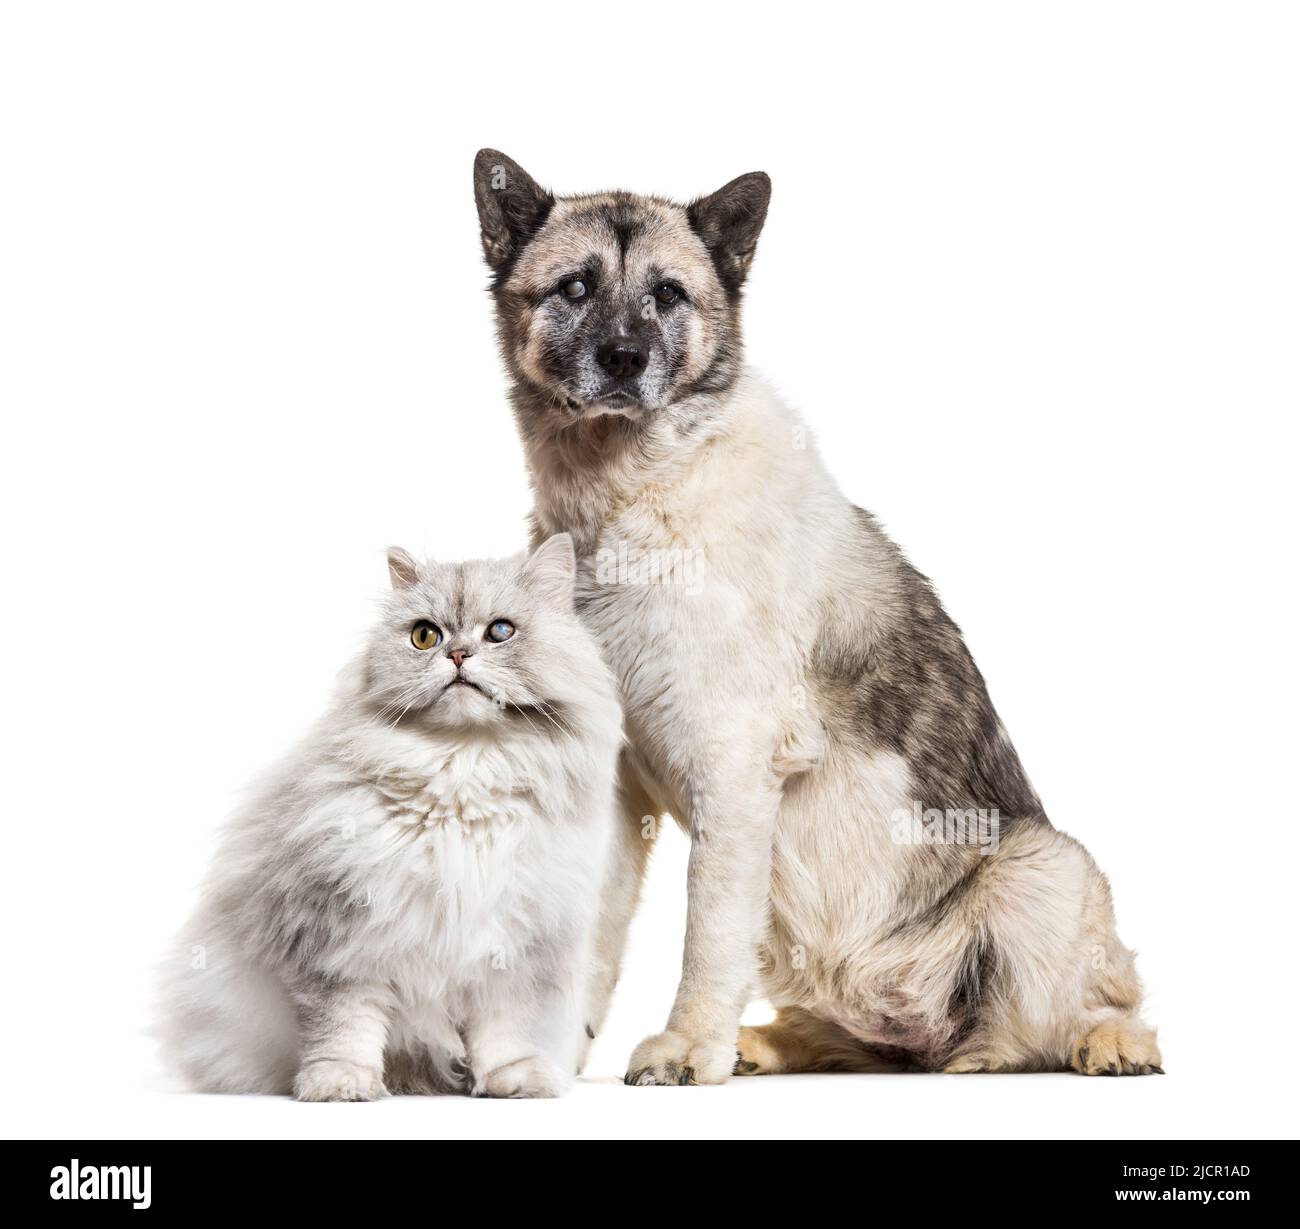 One-eyed blind cat and dog, isolated on white Stock Photo